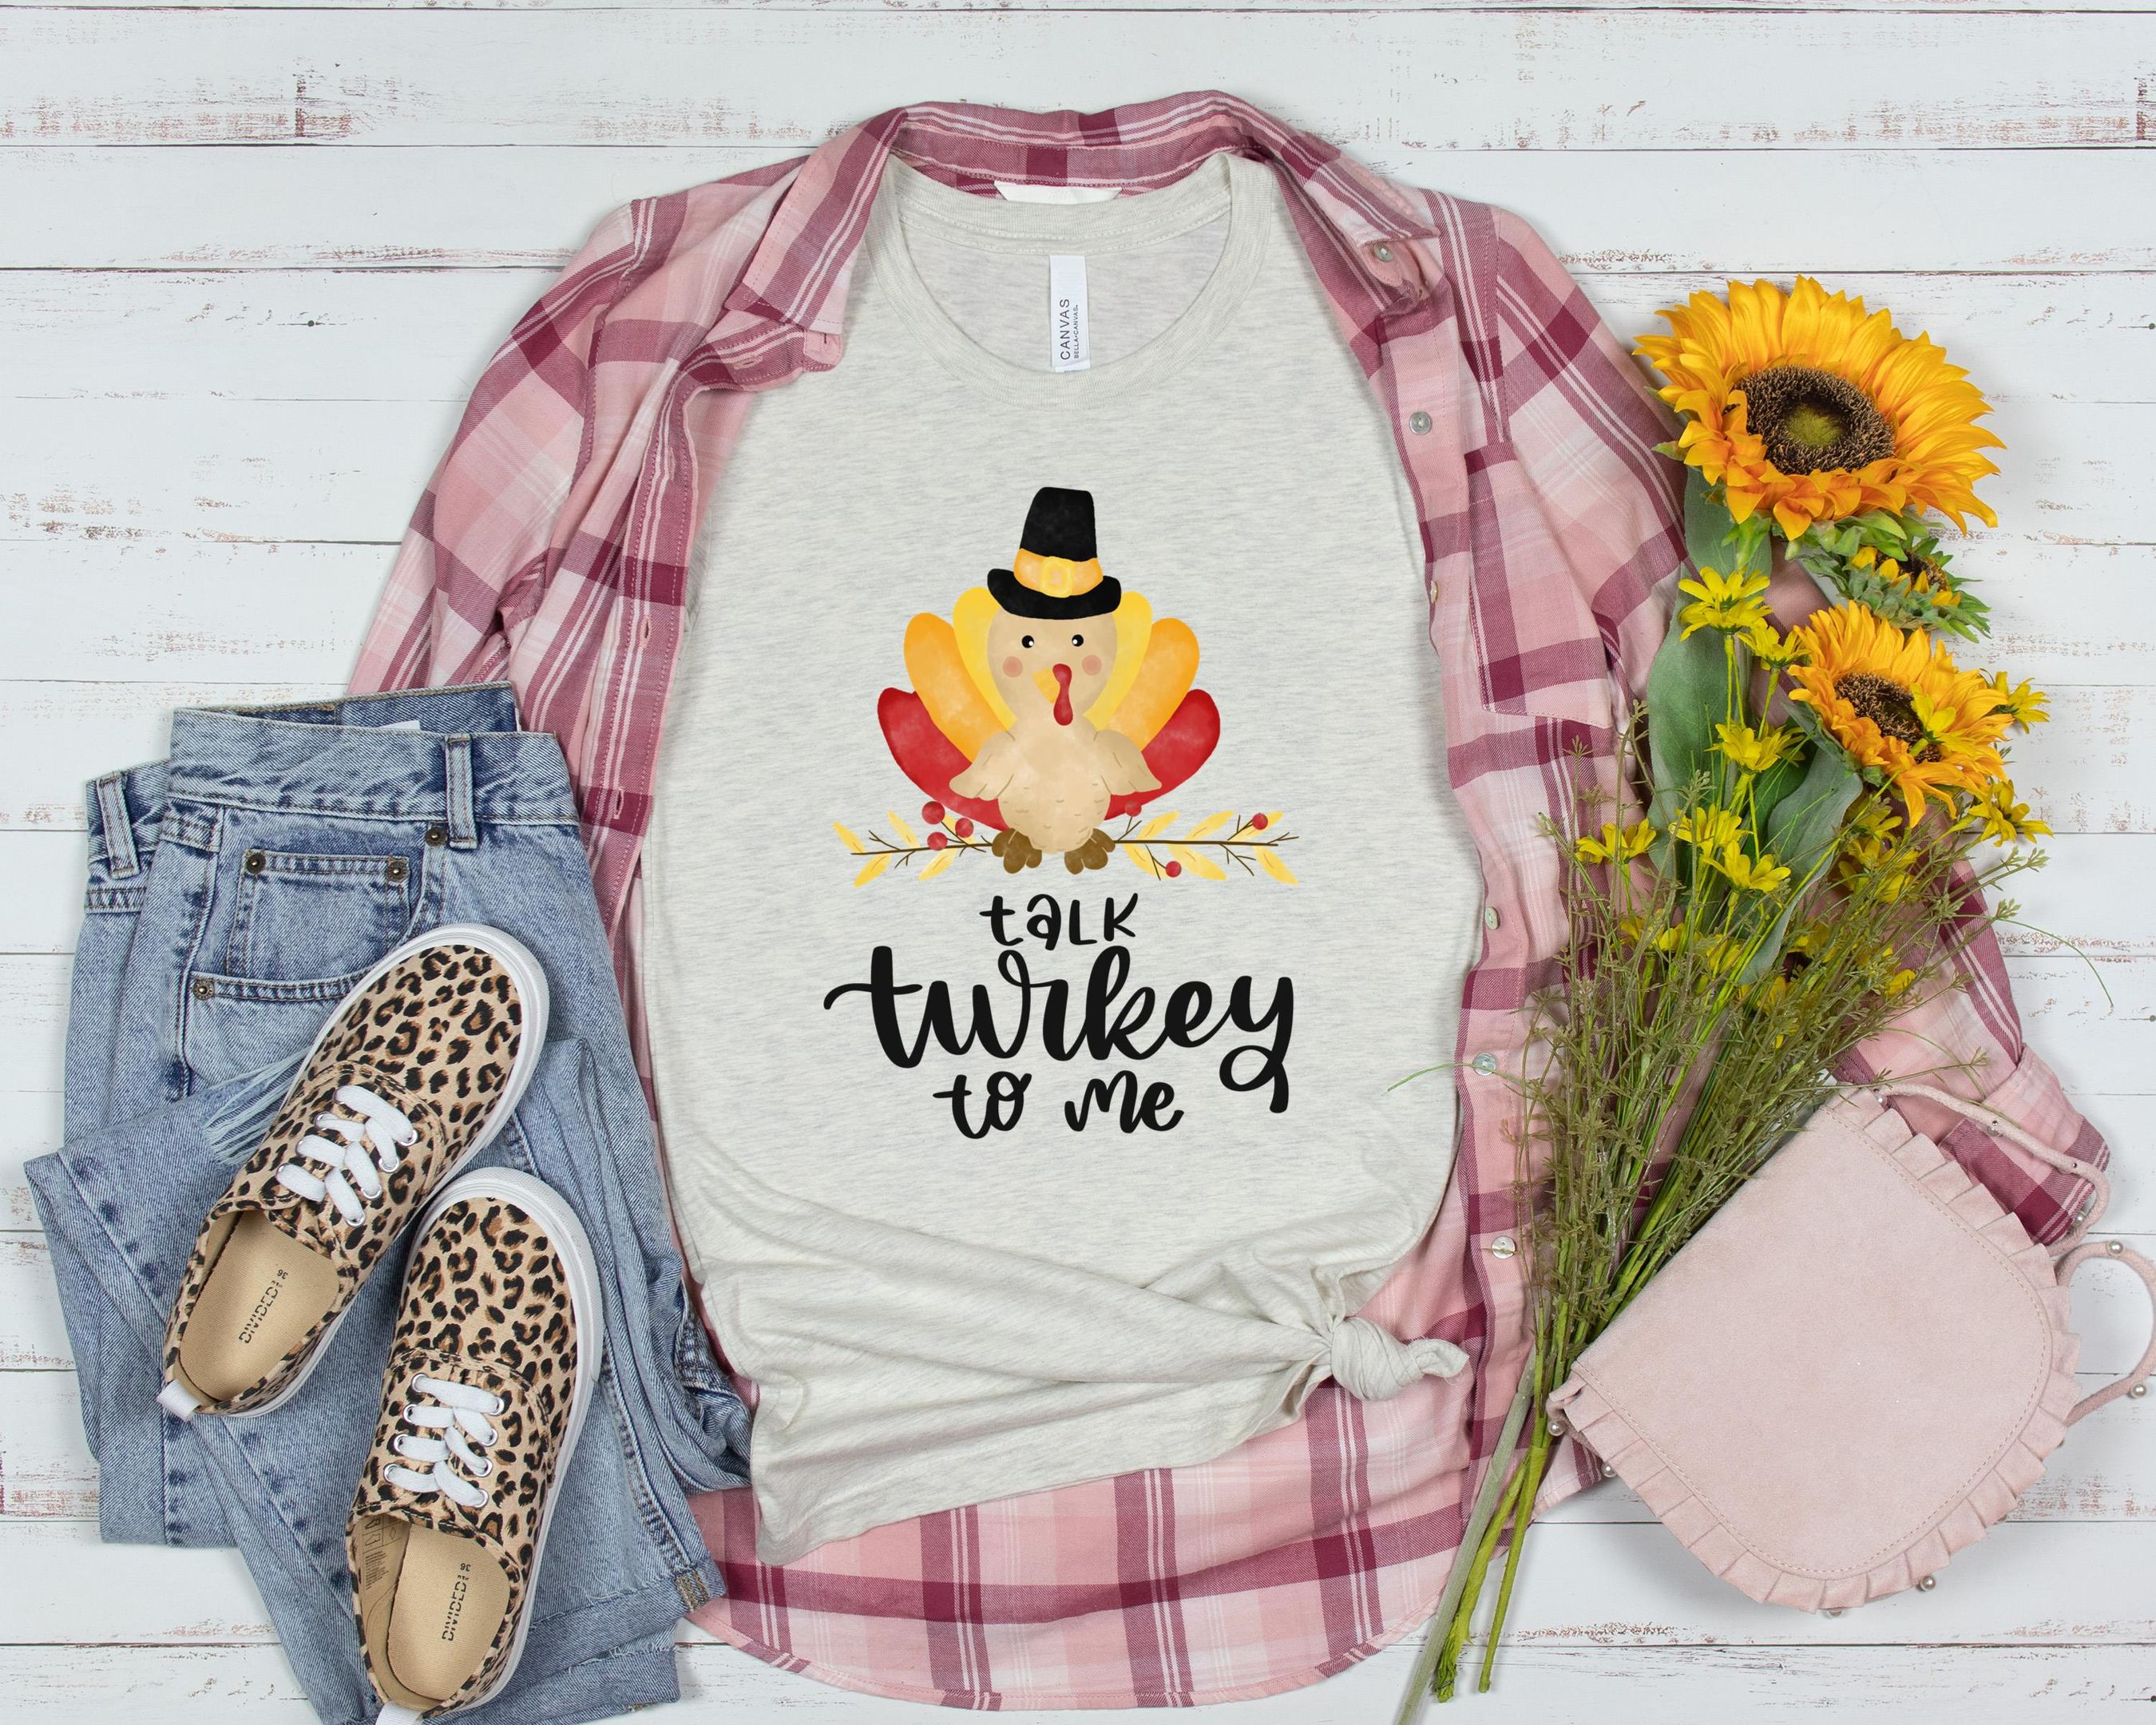 Talk Turkey To Me Shirt, Fall Season Shirt, Autumn Shirt, Happy Mid Shirt, For Autumn Shirt, Pumpkin Season Shirt, Thanksgiving Shirt